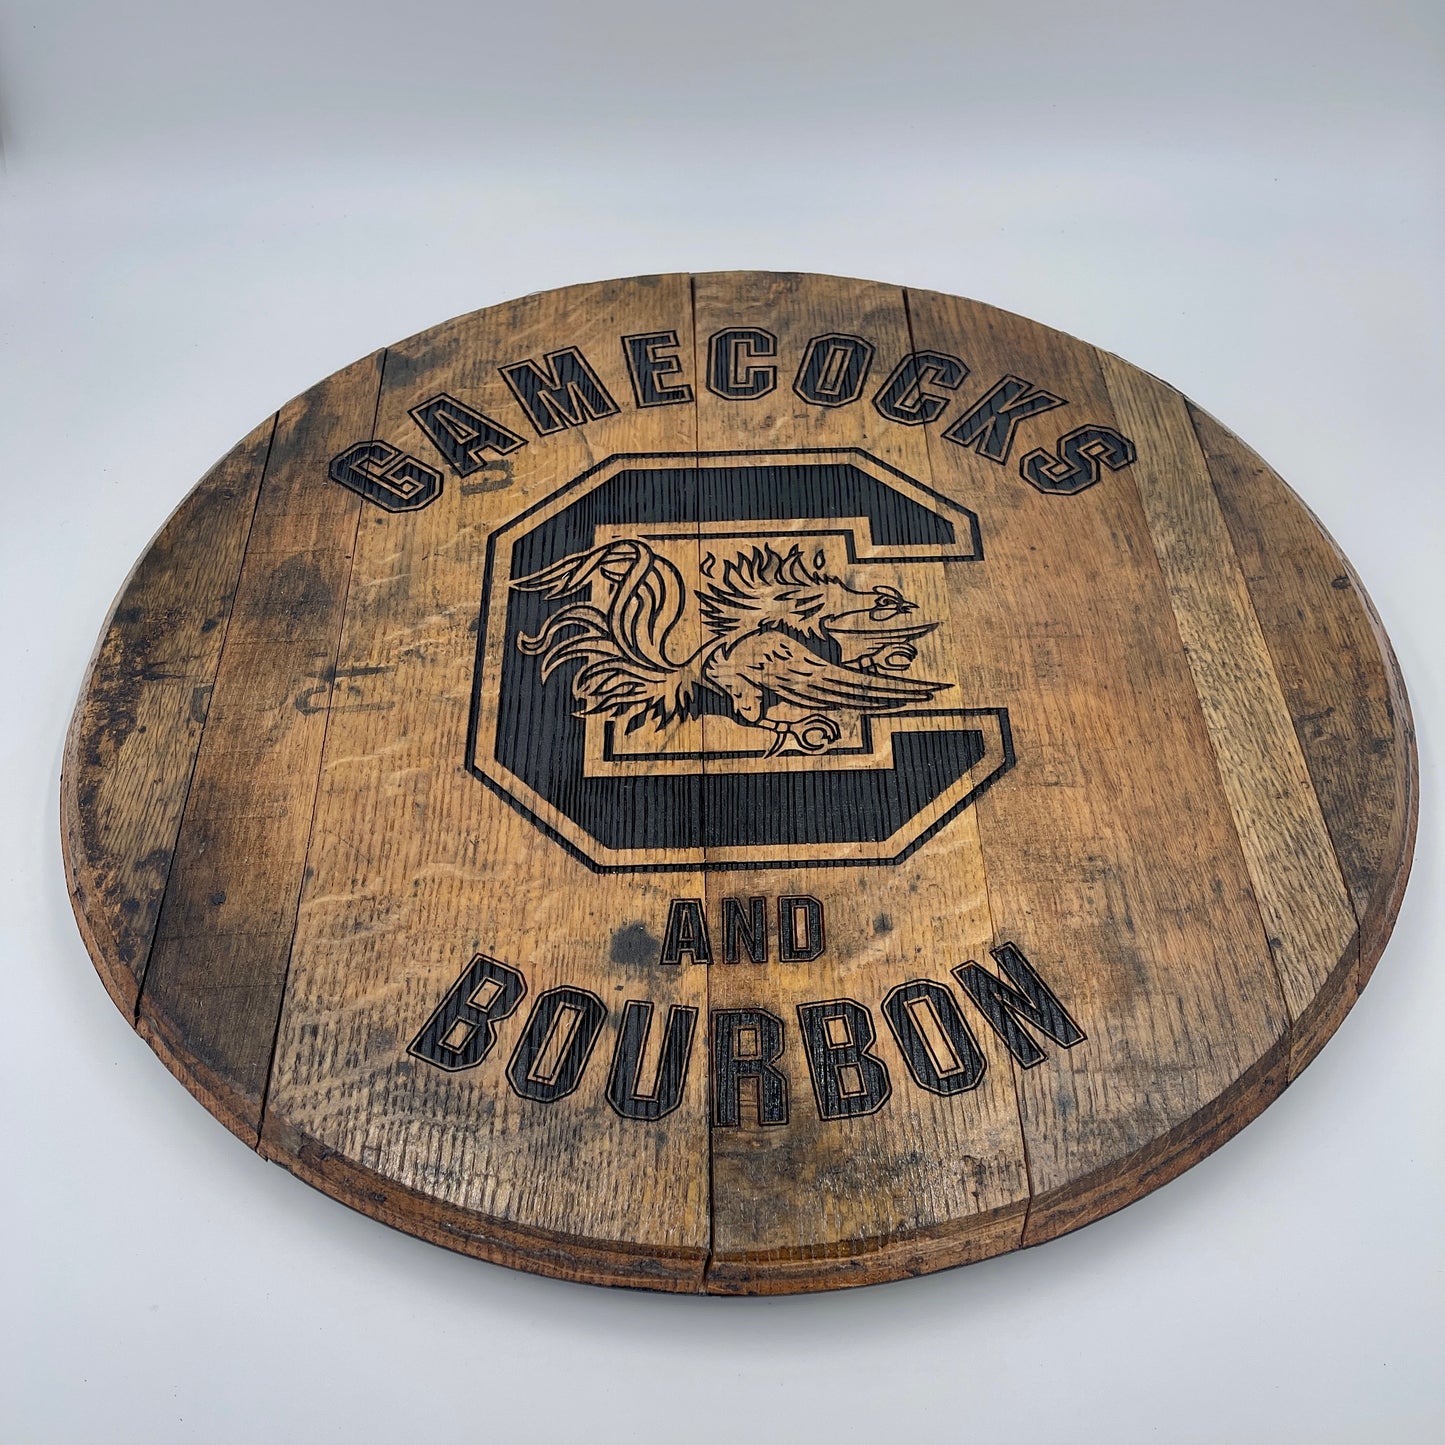 Gamecocks and Bourbon